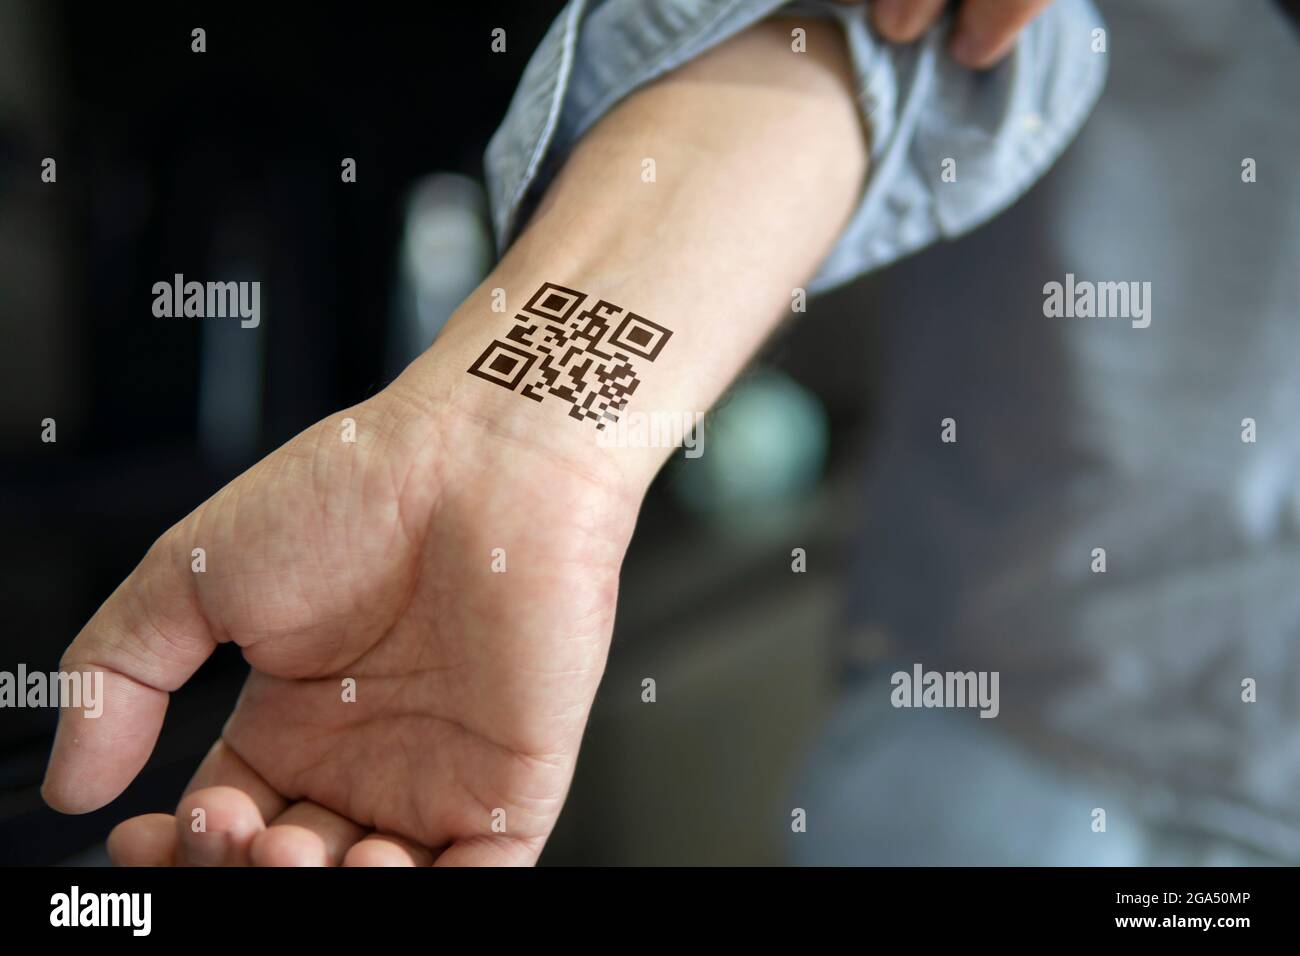 Wrist tattoo immagini e fotografie stock ad alta risoluzione - Alamy